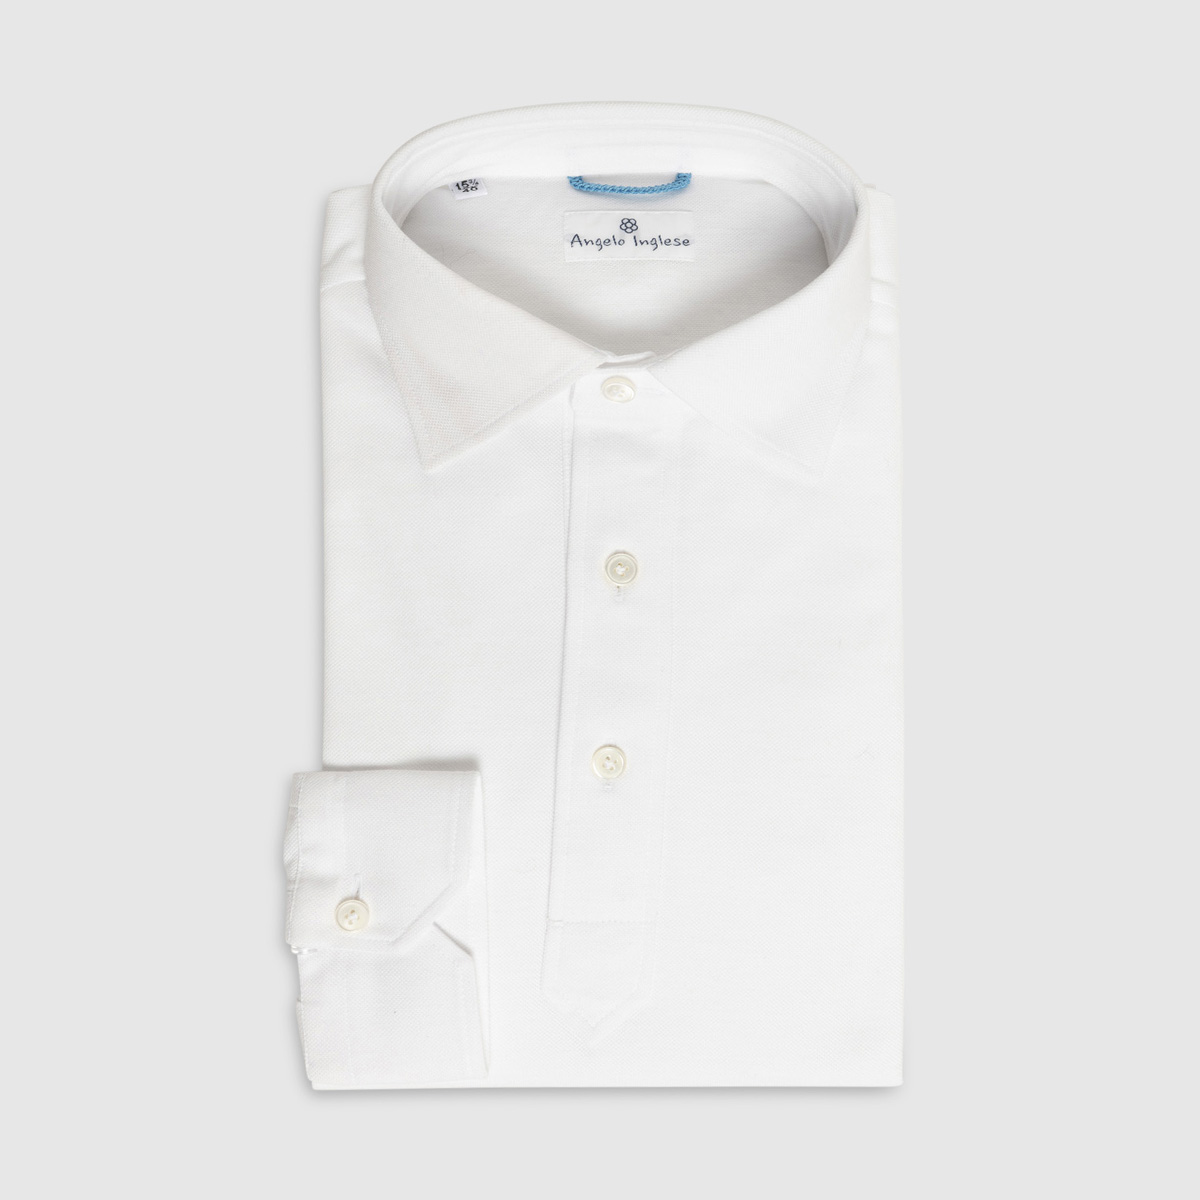 JFK Polo Shirt in White Piquet Cotton